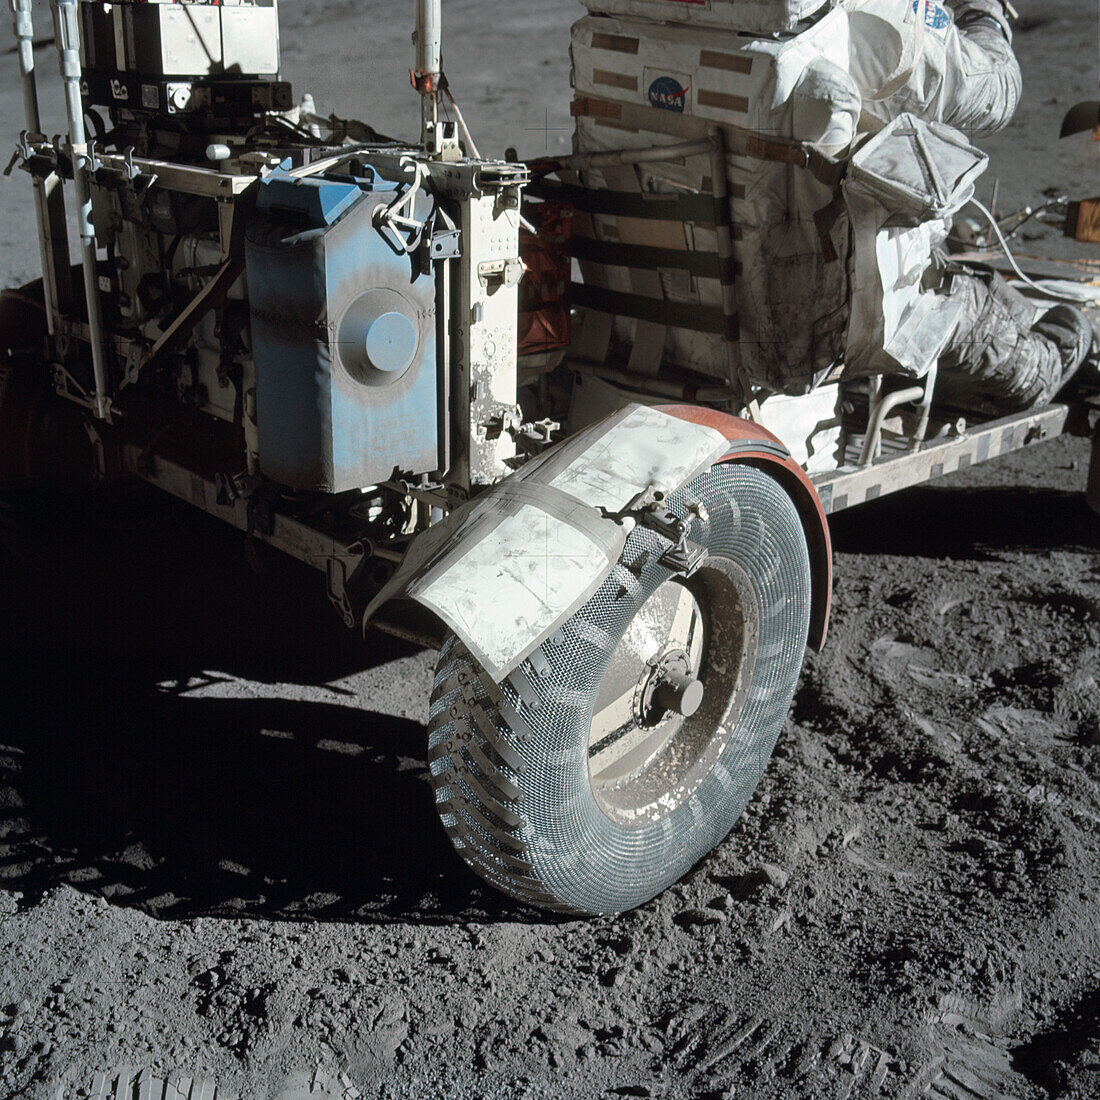 Apollo 17 picture of Lunar rover